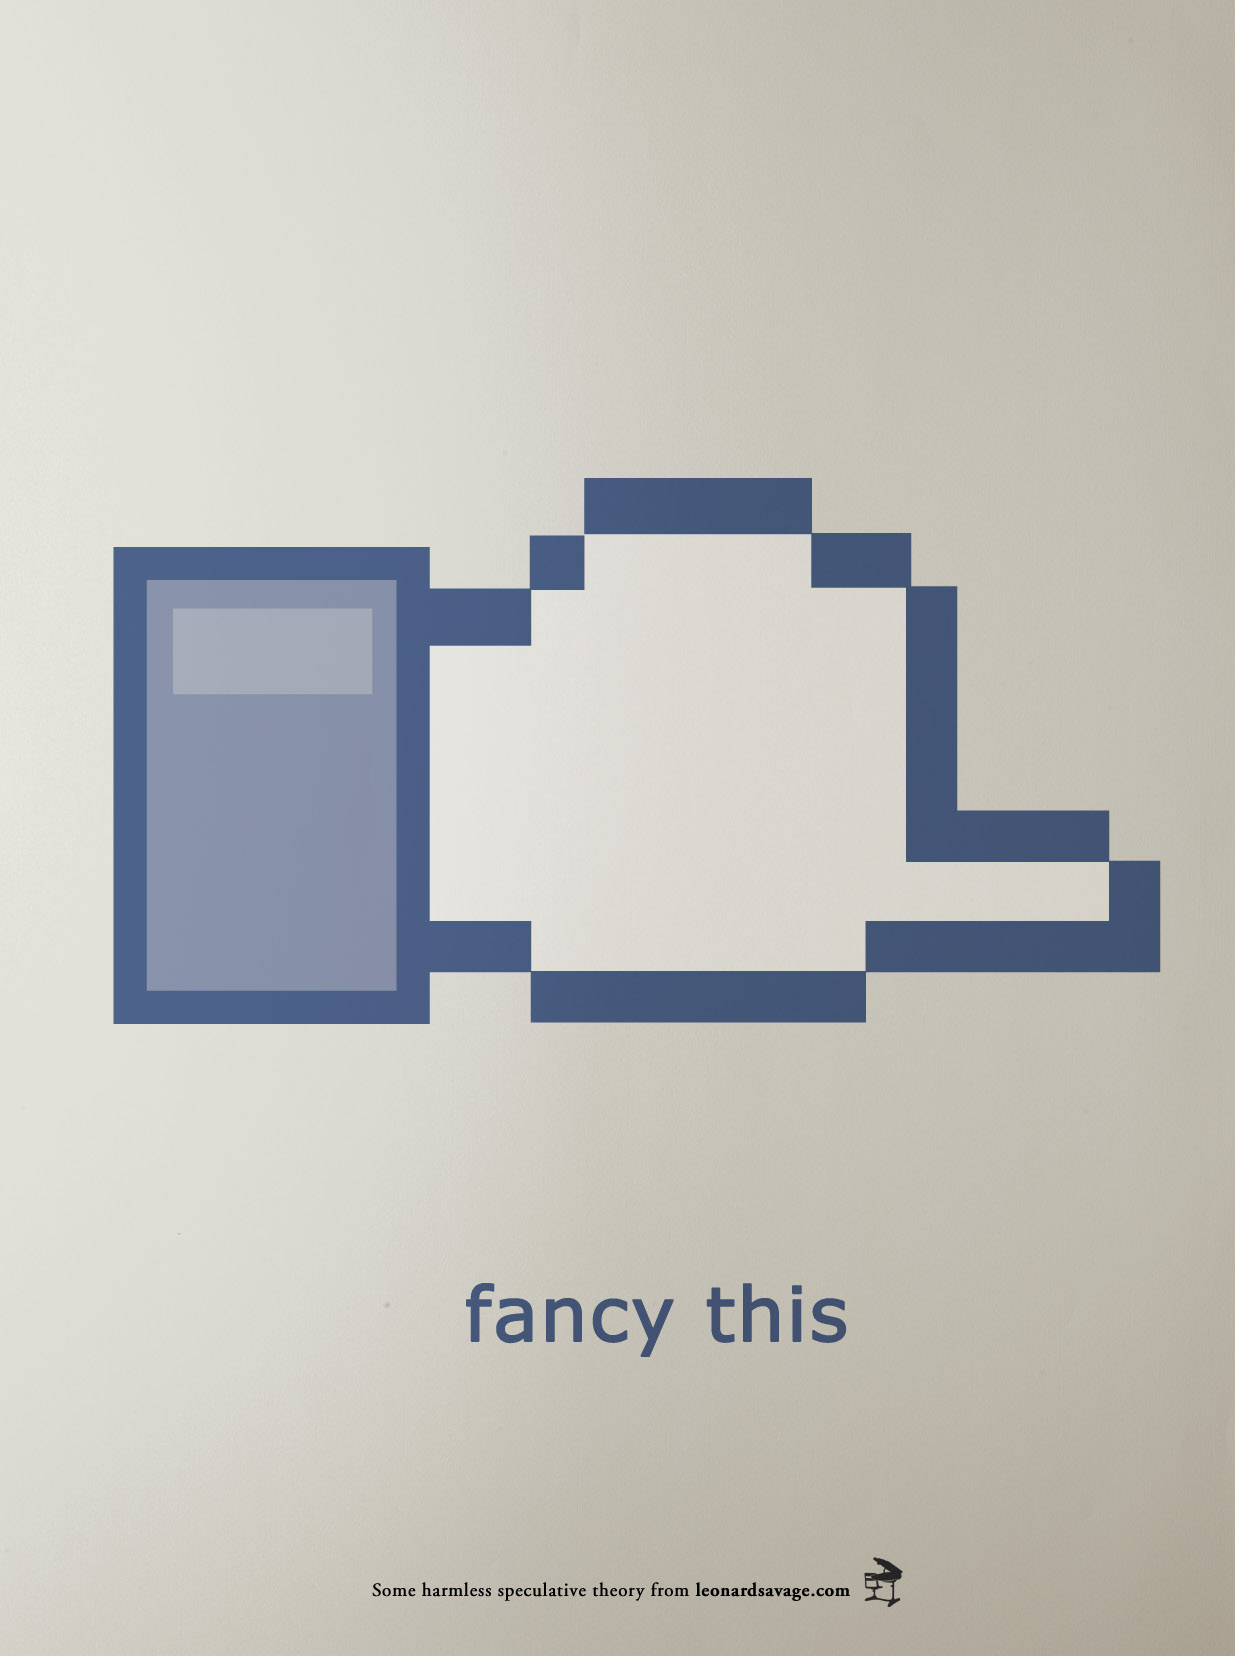 Icon im Facebook-Stil